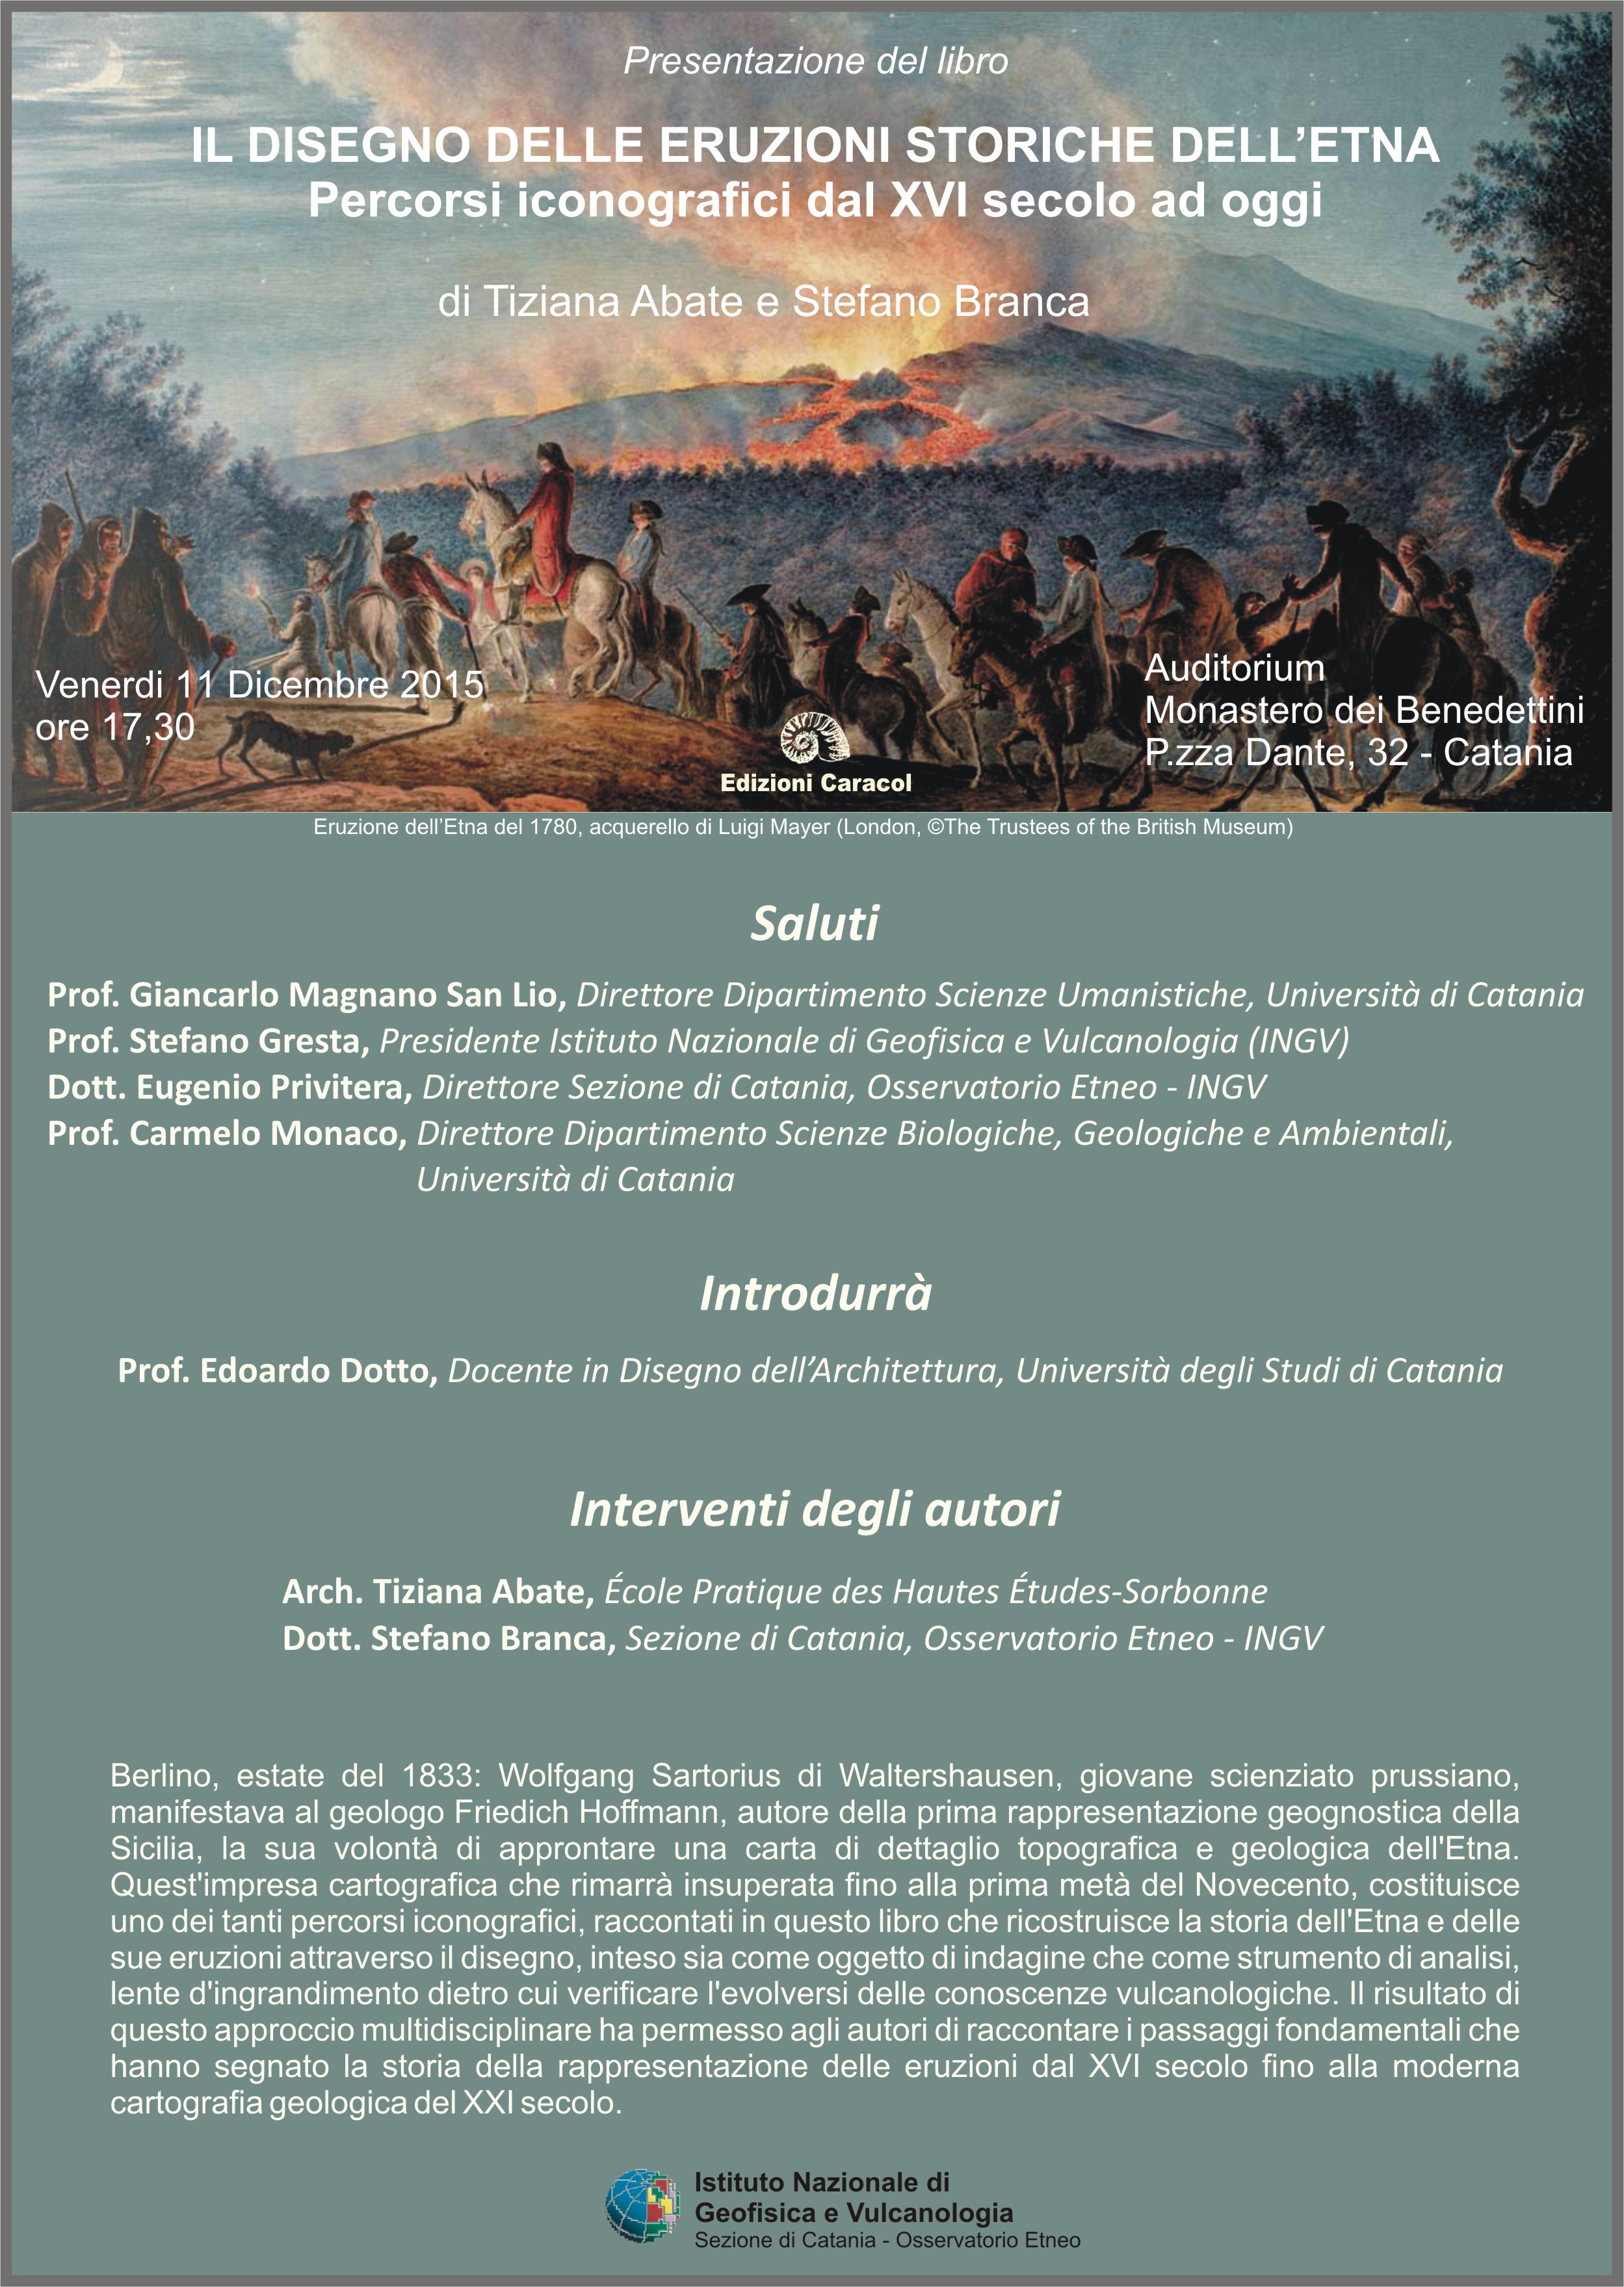  Presentazione del libro “Il disegno delle eruzioni storiche dell’Etna”, di Tiziana Abate